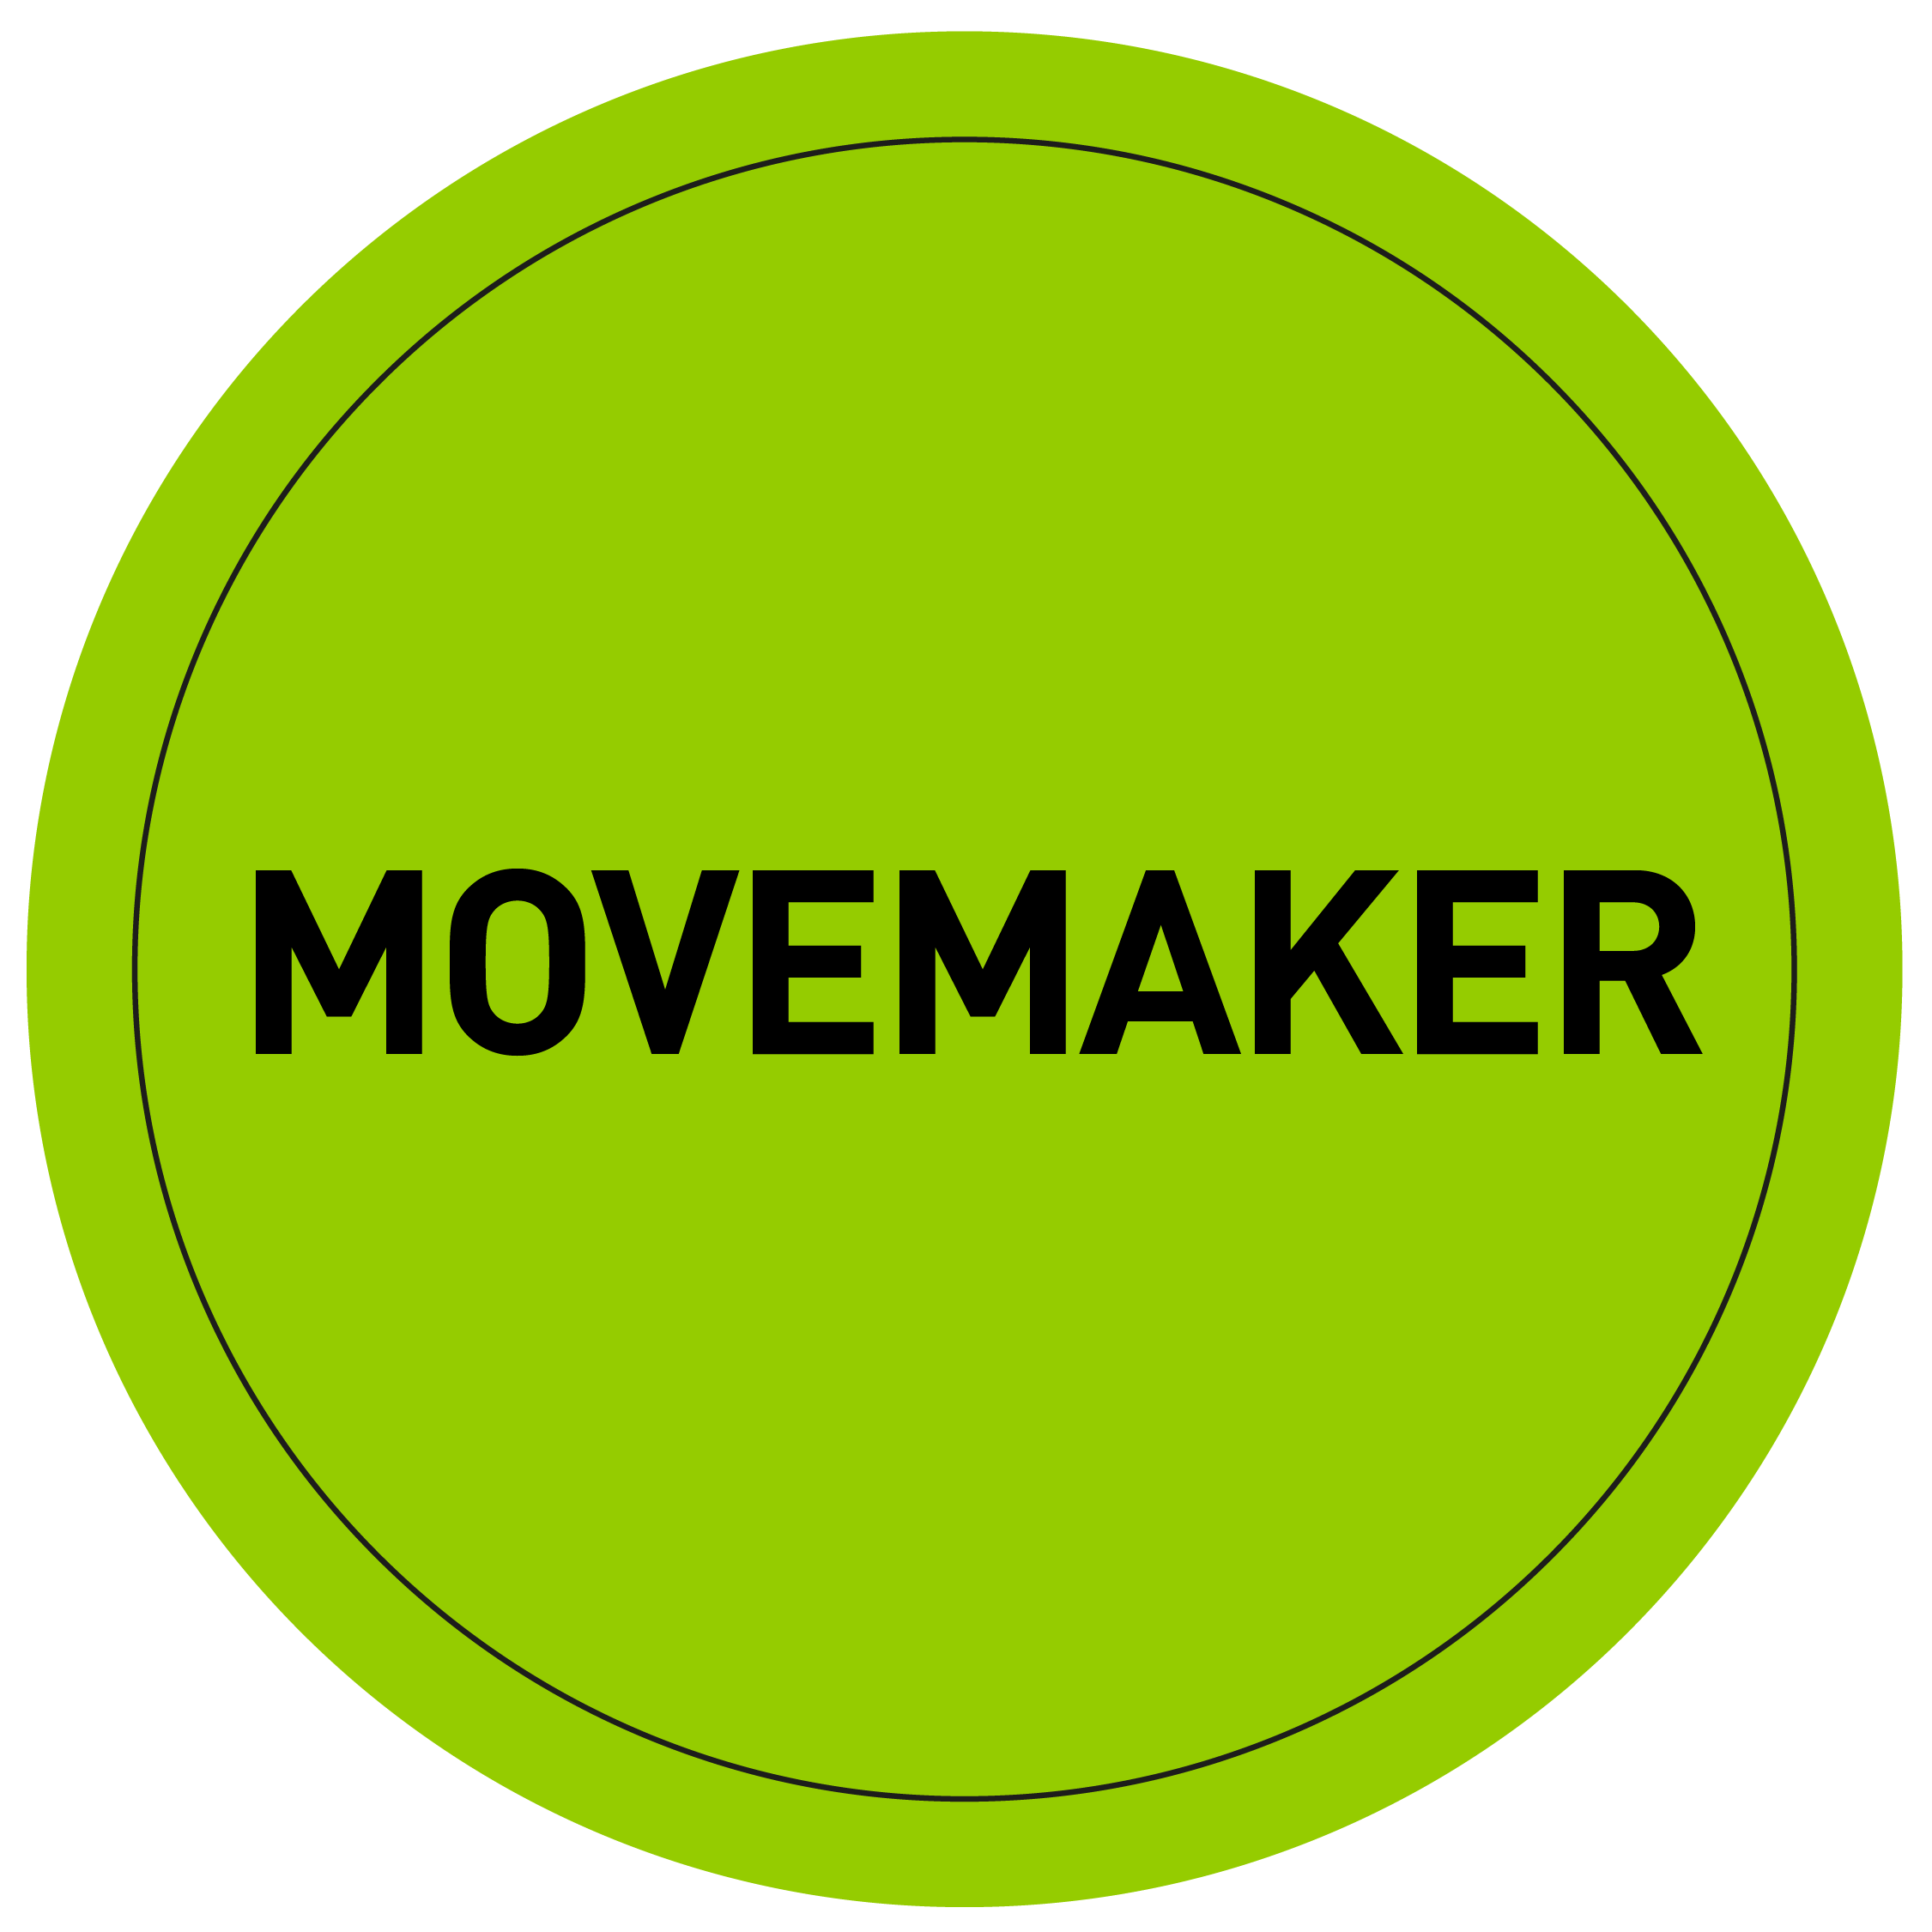 Movemaker Lockup - Barratt Homes